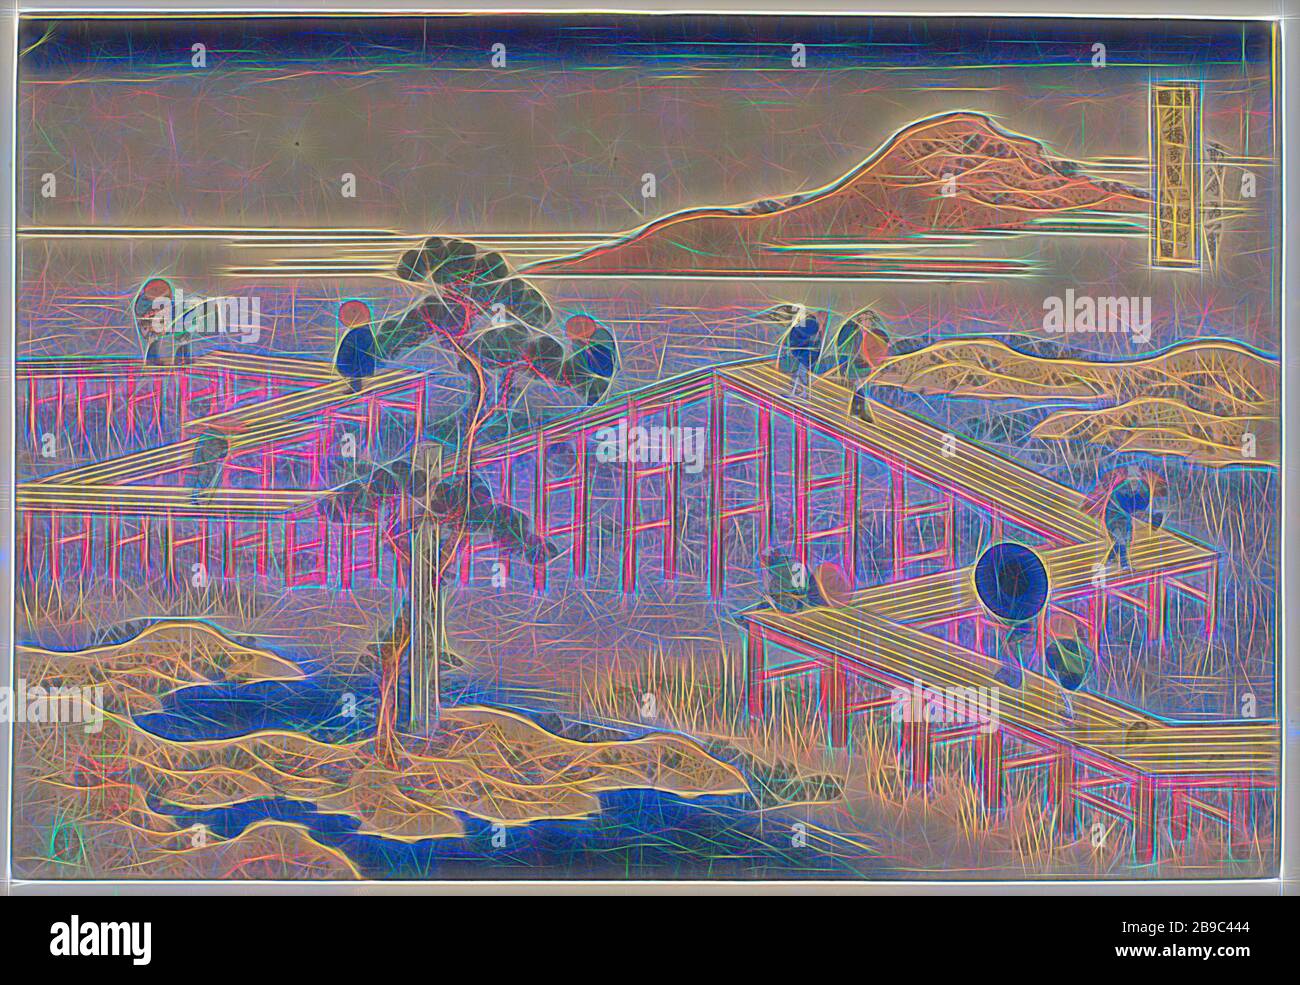 Il ponte a zigzag nella provincia di Mikawa Mikawa no yatsuhashi no kozu (titolo su oggetto) viste di famosi ponti nelle province (titolo della serie) Shokoku meikyo kiran (titolo su oggetto), viaggiatori sul famoso ponte a zigzagging, guardando le piante fiorite nella palude. In primo piano un pino vicino a un monumento buddista, paesaggio con ponte, viadotto o acquedotto, Katsushika Hokusai (menzionato su oggetto), 1830 - 1834, carta, legno tagliato a colori, h 262 mm × w 384 mm, Reimagined by Gibon, design di calore allegro luminoso e raggi di luce radiance. Arte classica reinventata con un mod Foto Stock